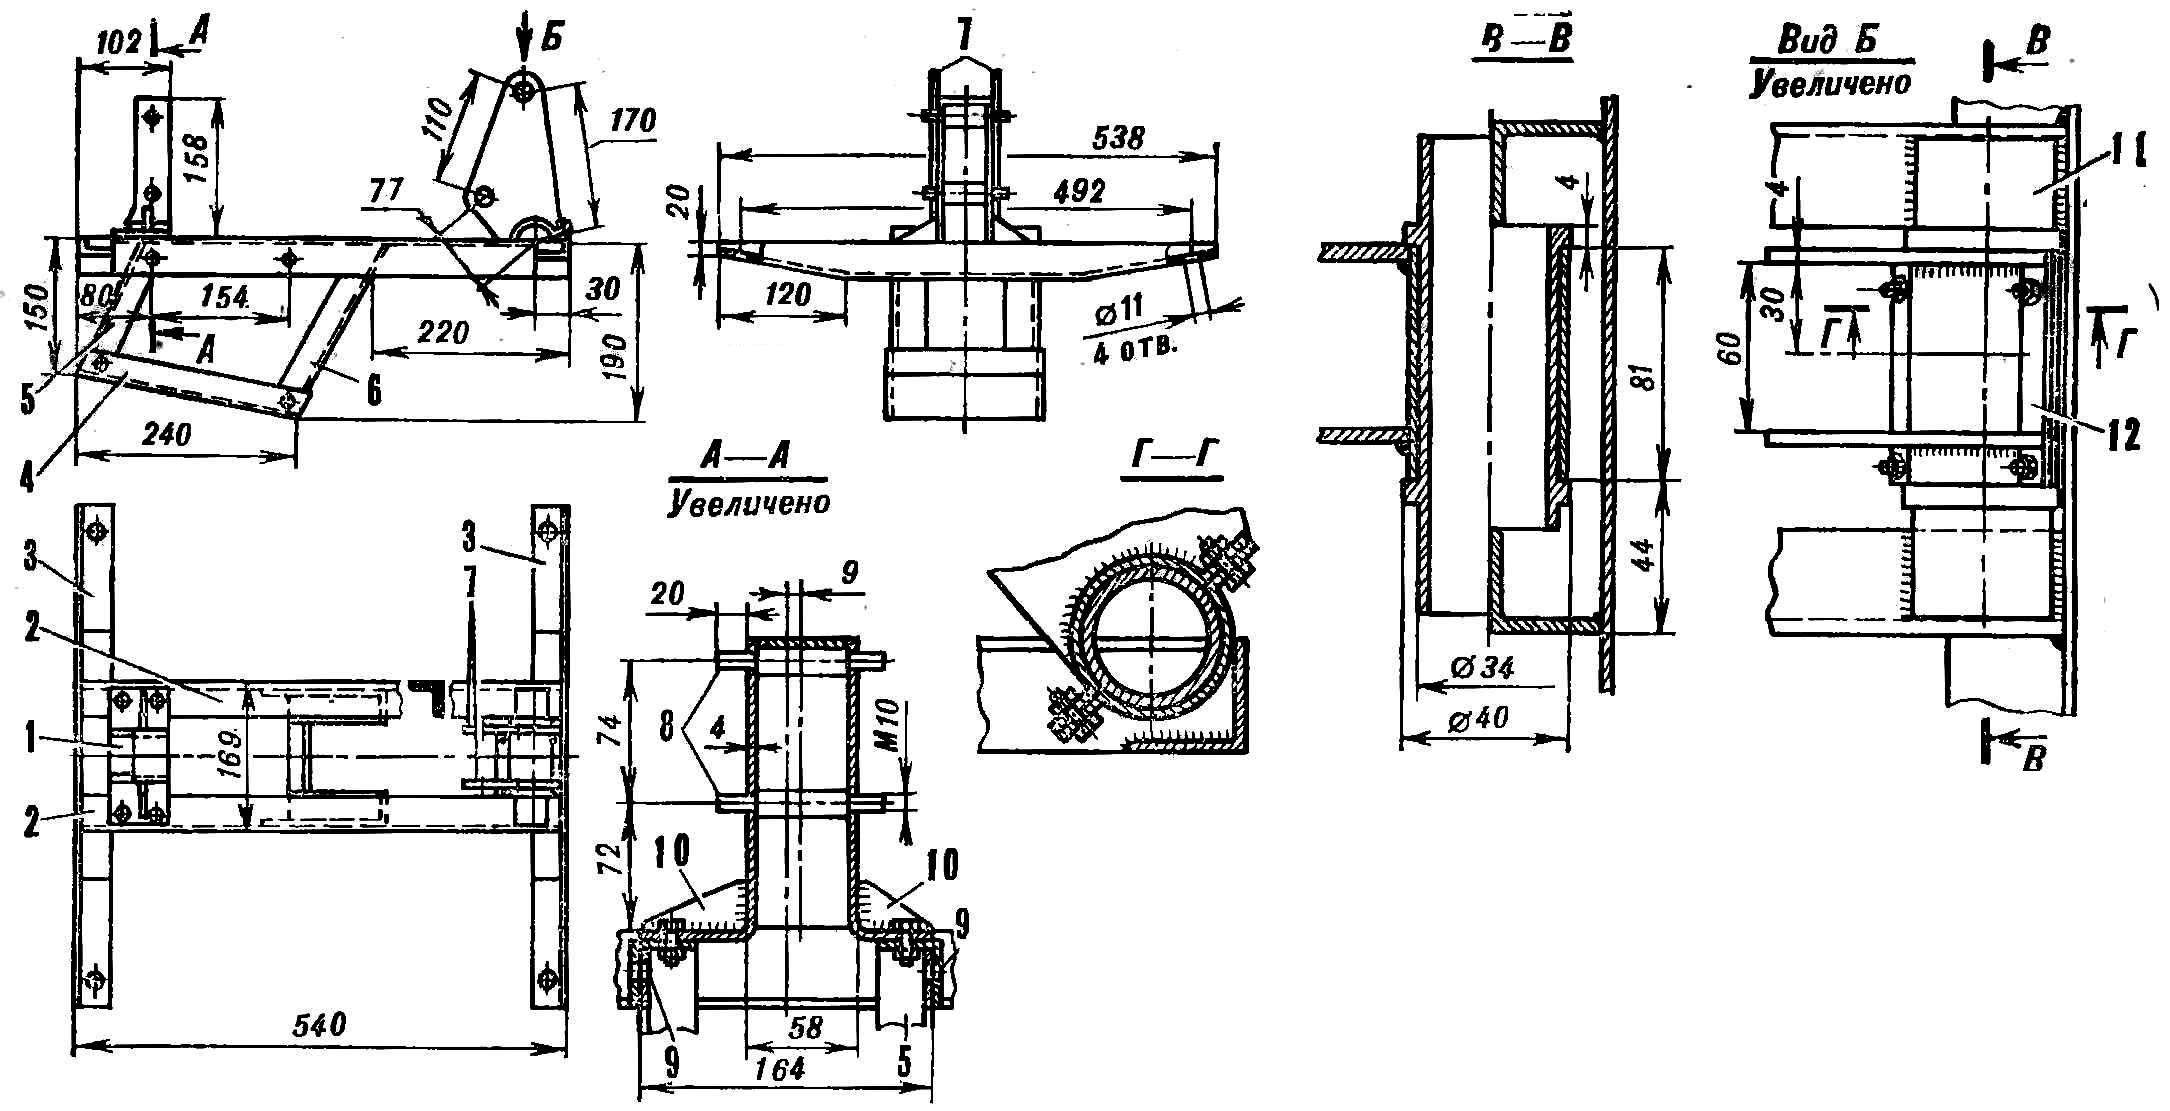 Fig. 9. Under engine frame